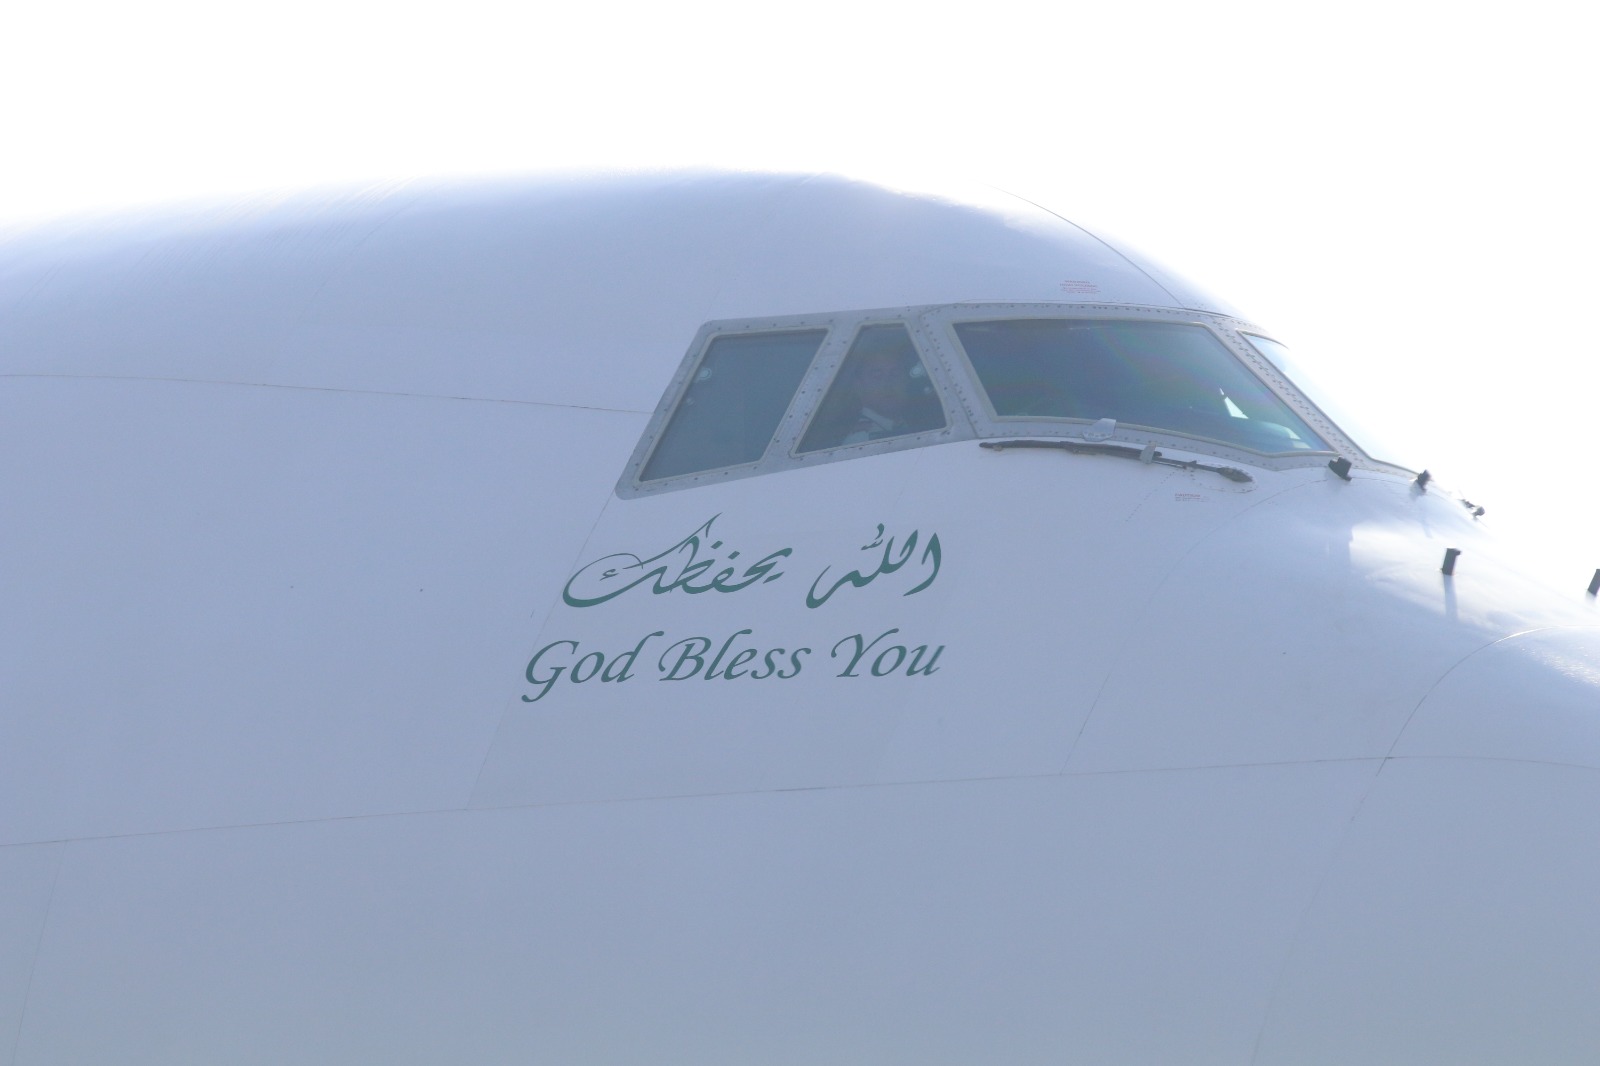 Kemenag Semprot Saudia Airlines; Pesawat Delay, Jamaah Kelaparan